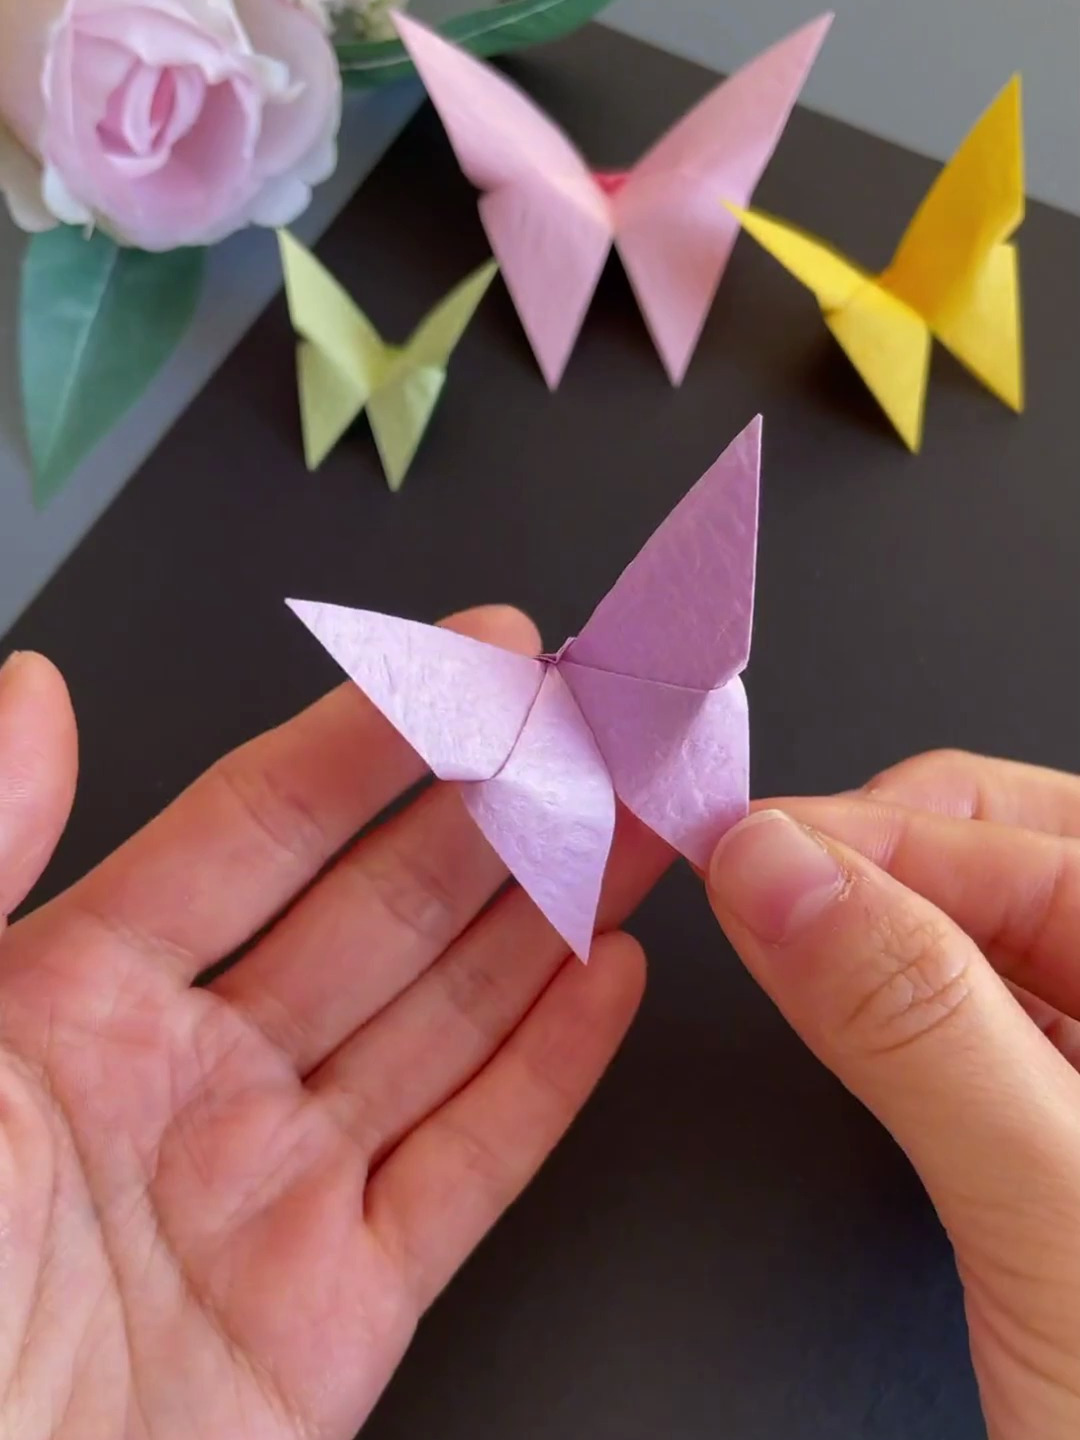 蝴蝶折纸制作指南:步骤详解与技巧分享